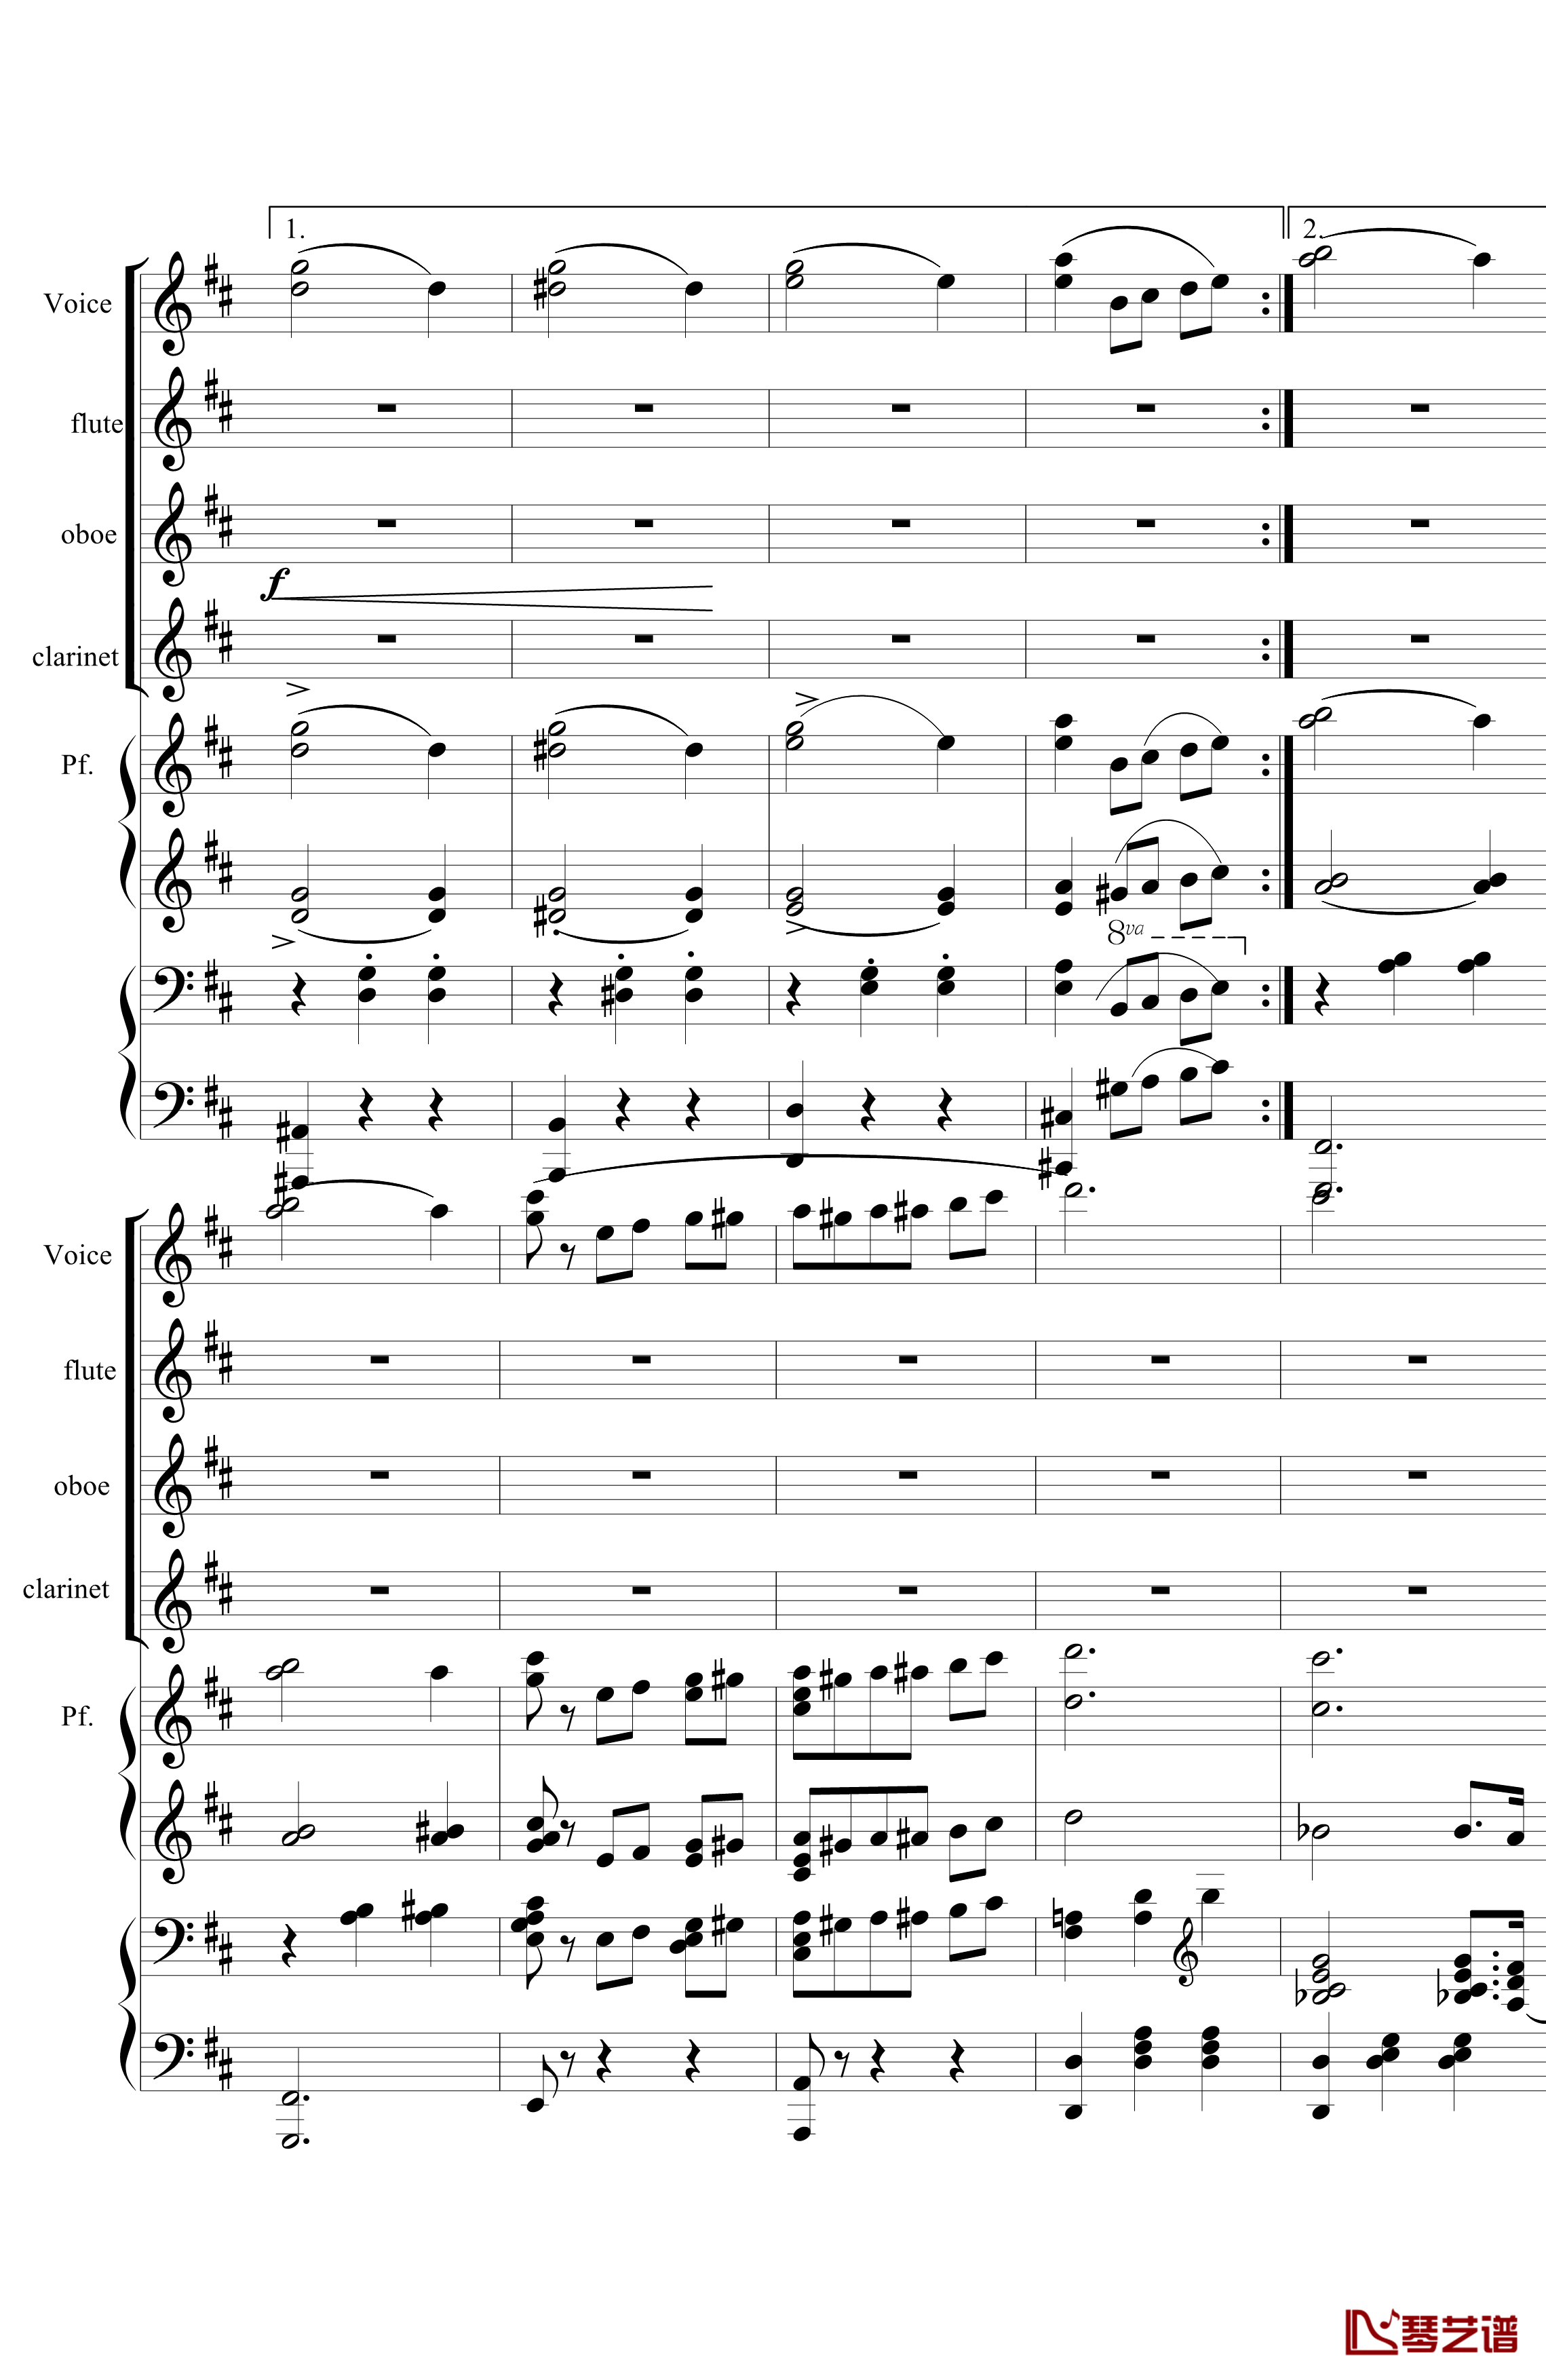 花之圆舞曲钢琴谱-室内乐-柴科夫斯基-Peter Ilyich Tchaikovsky22